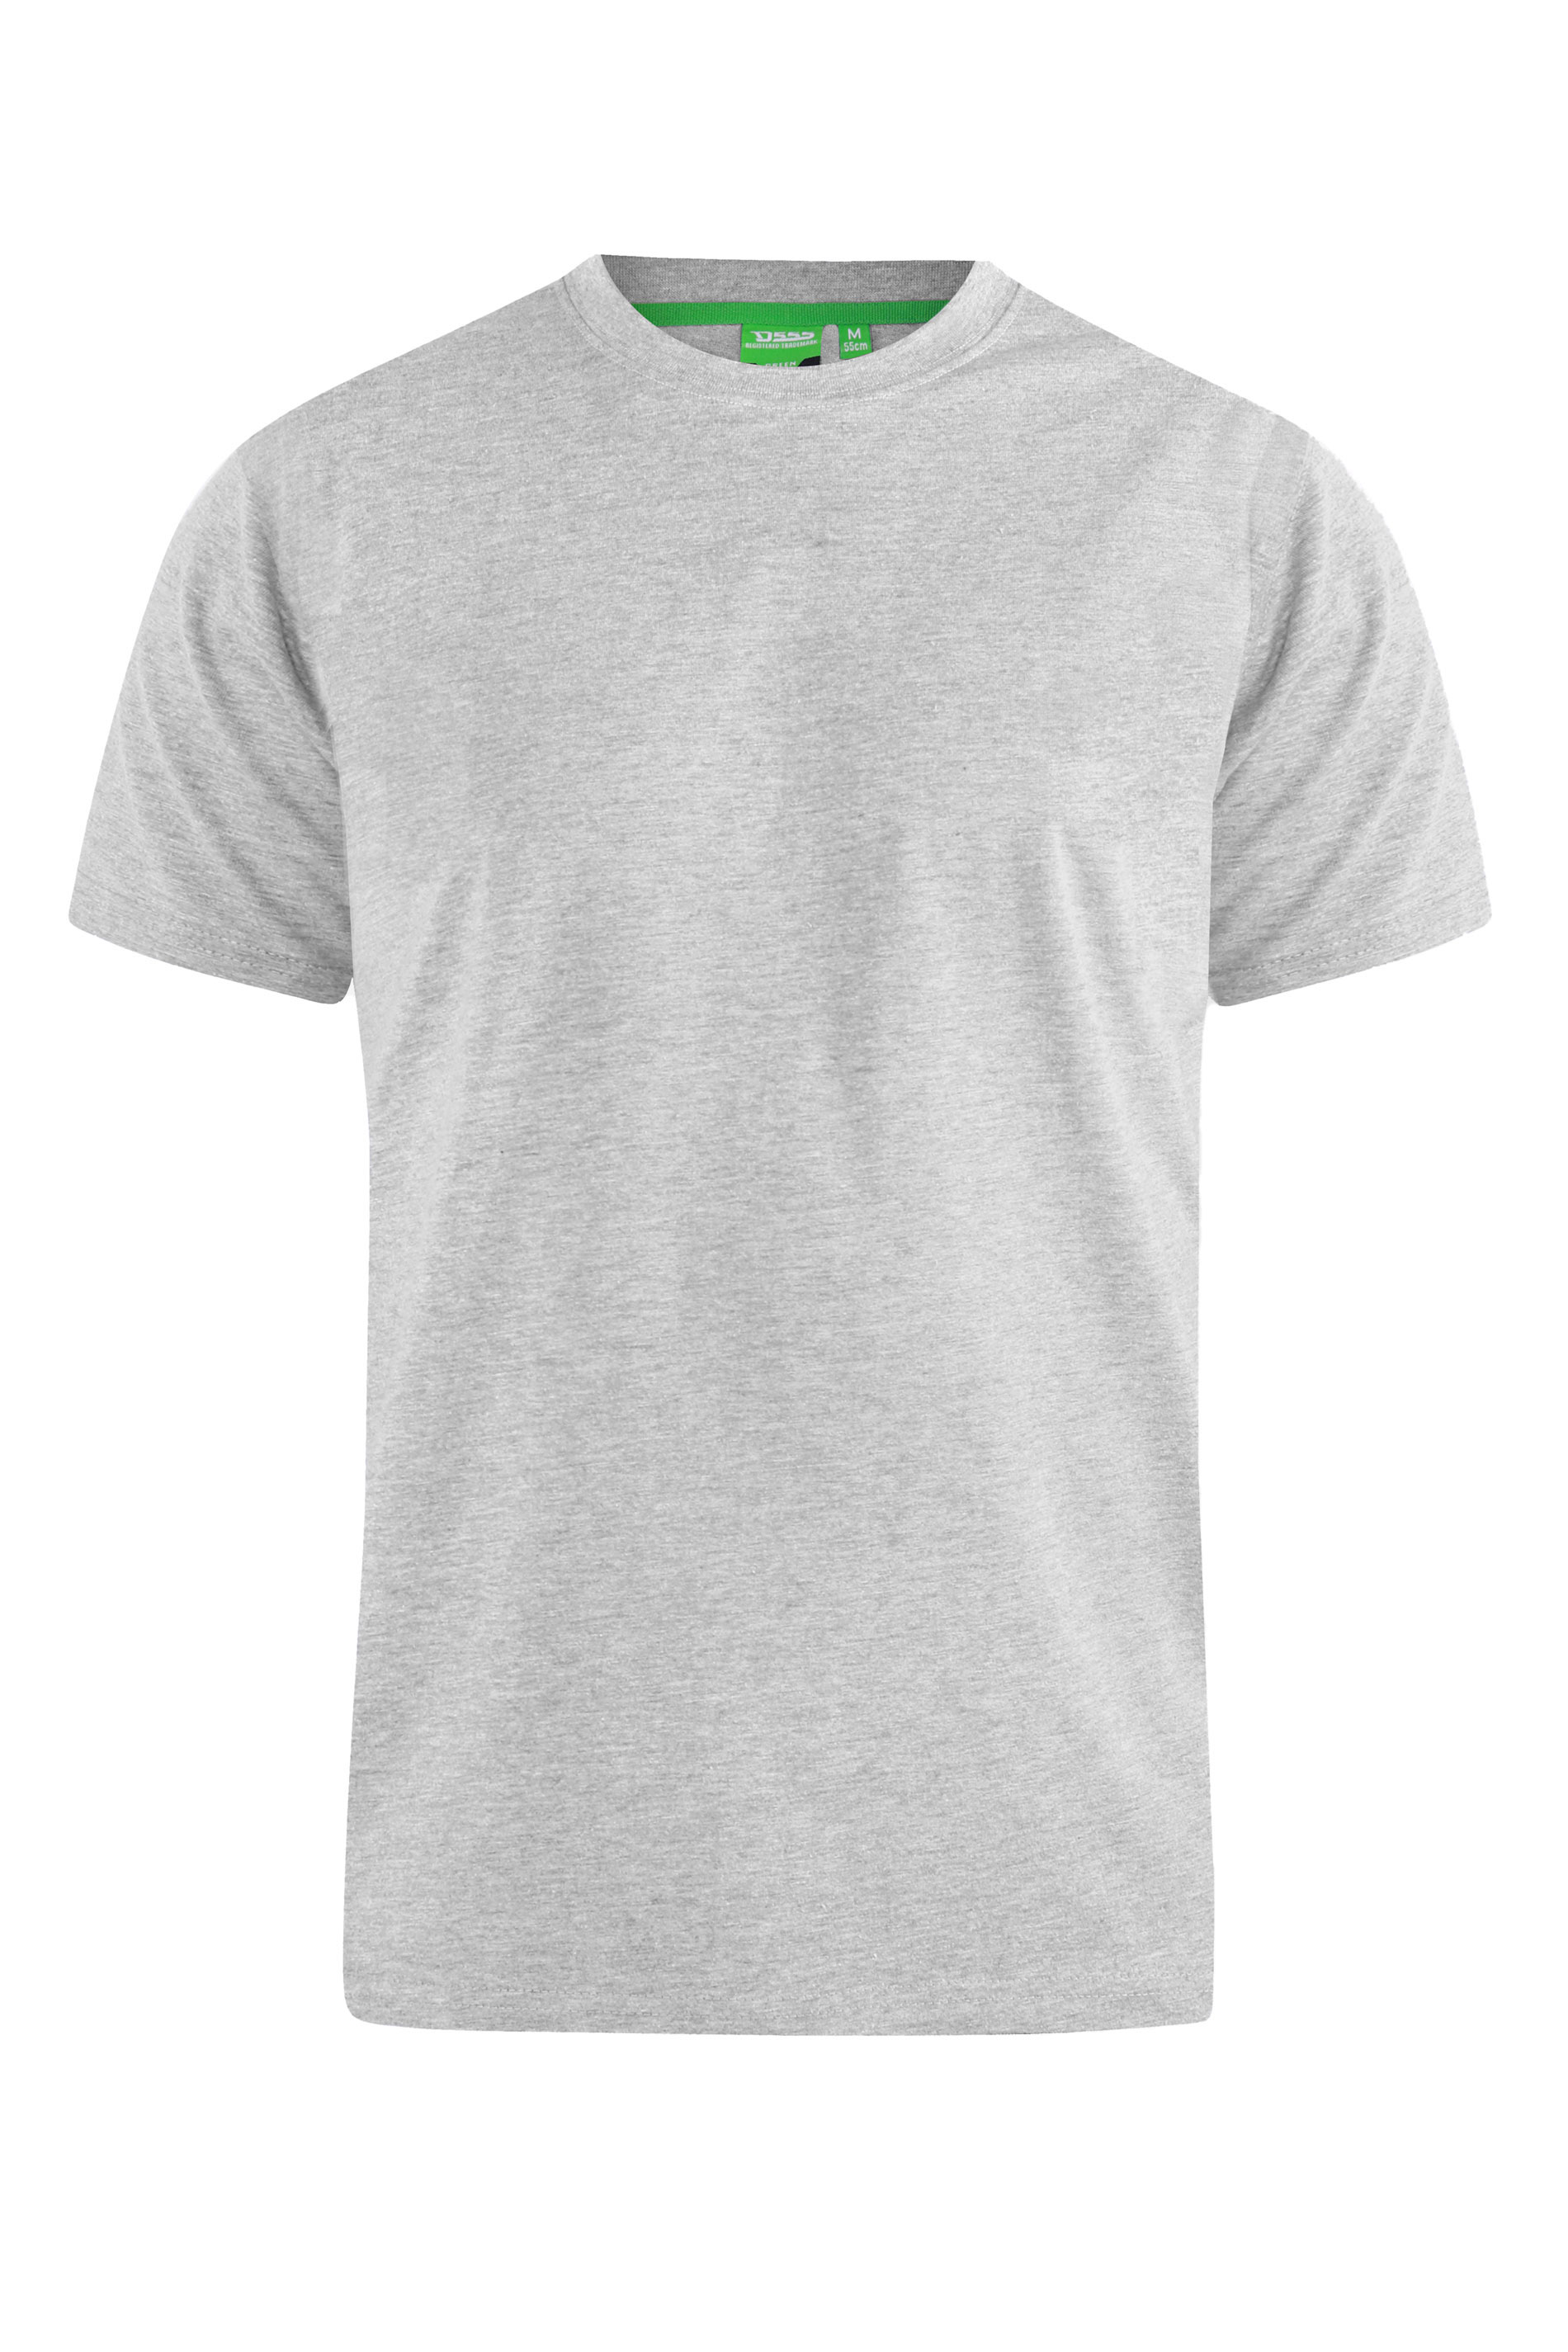 D555 Grey Marl Duke Basic T-Shirt | BadRhino 2